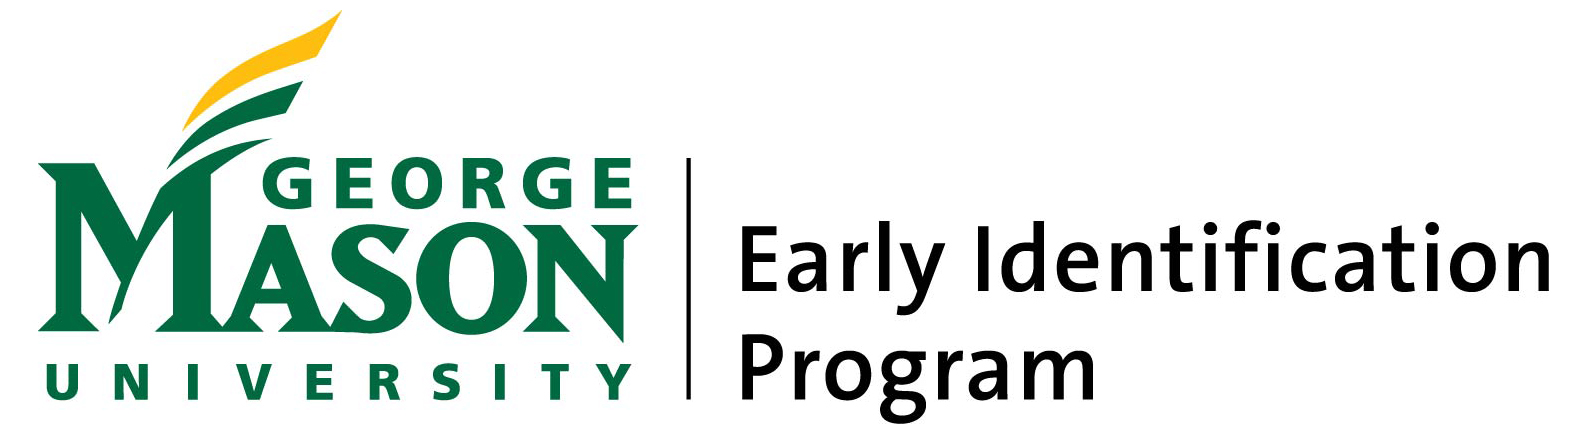 George Mason University - Early Identification Program logo